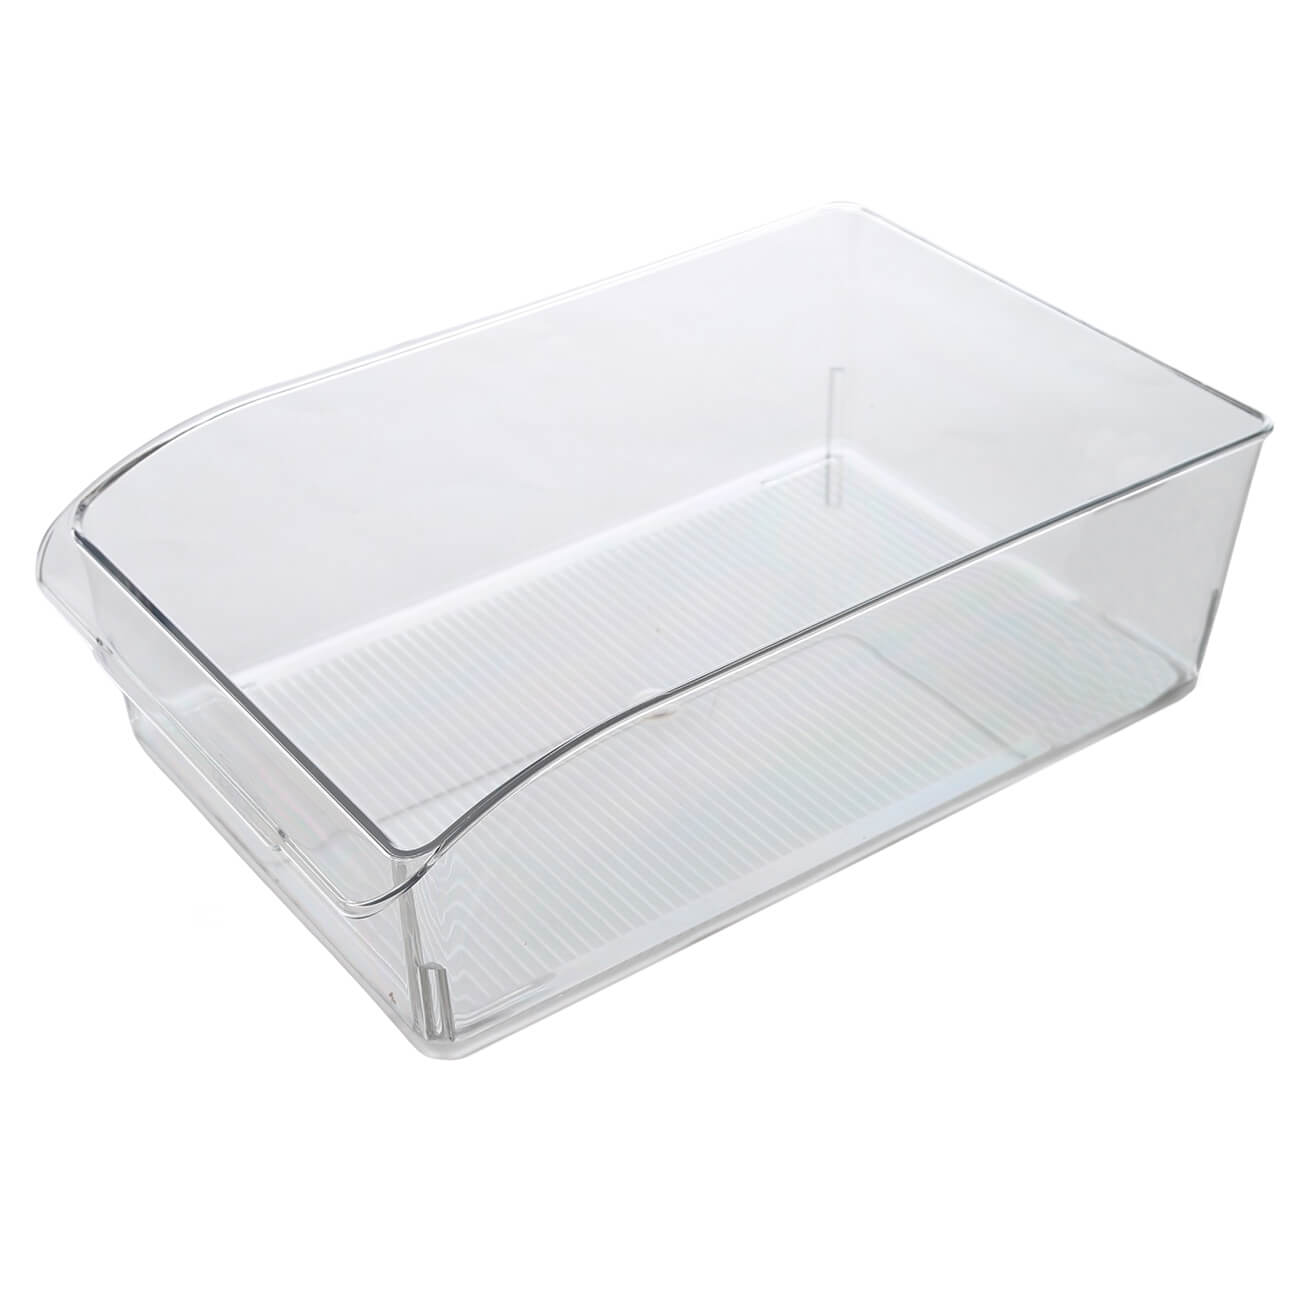 Ящик-органайзер для холодильника, 32х20 см, акрил, Basic ящик органайзер для холодильника 32х20 см акрил basic